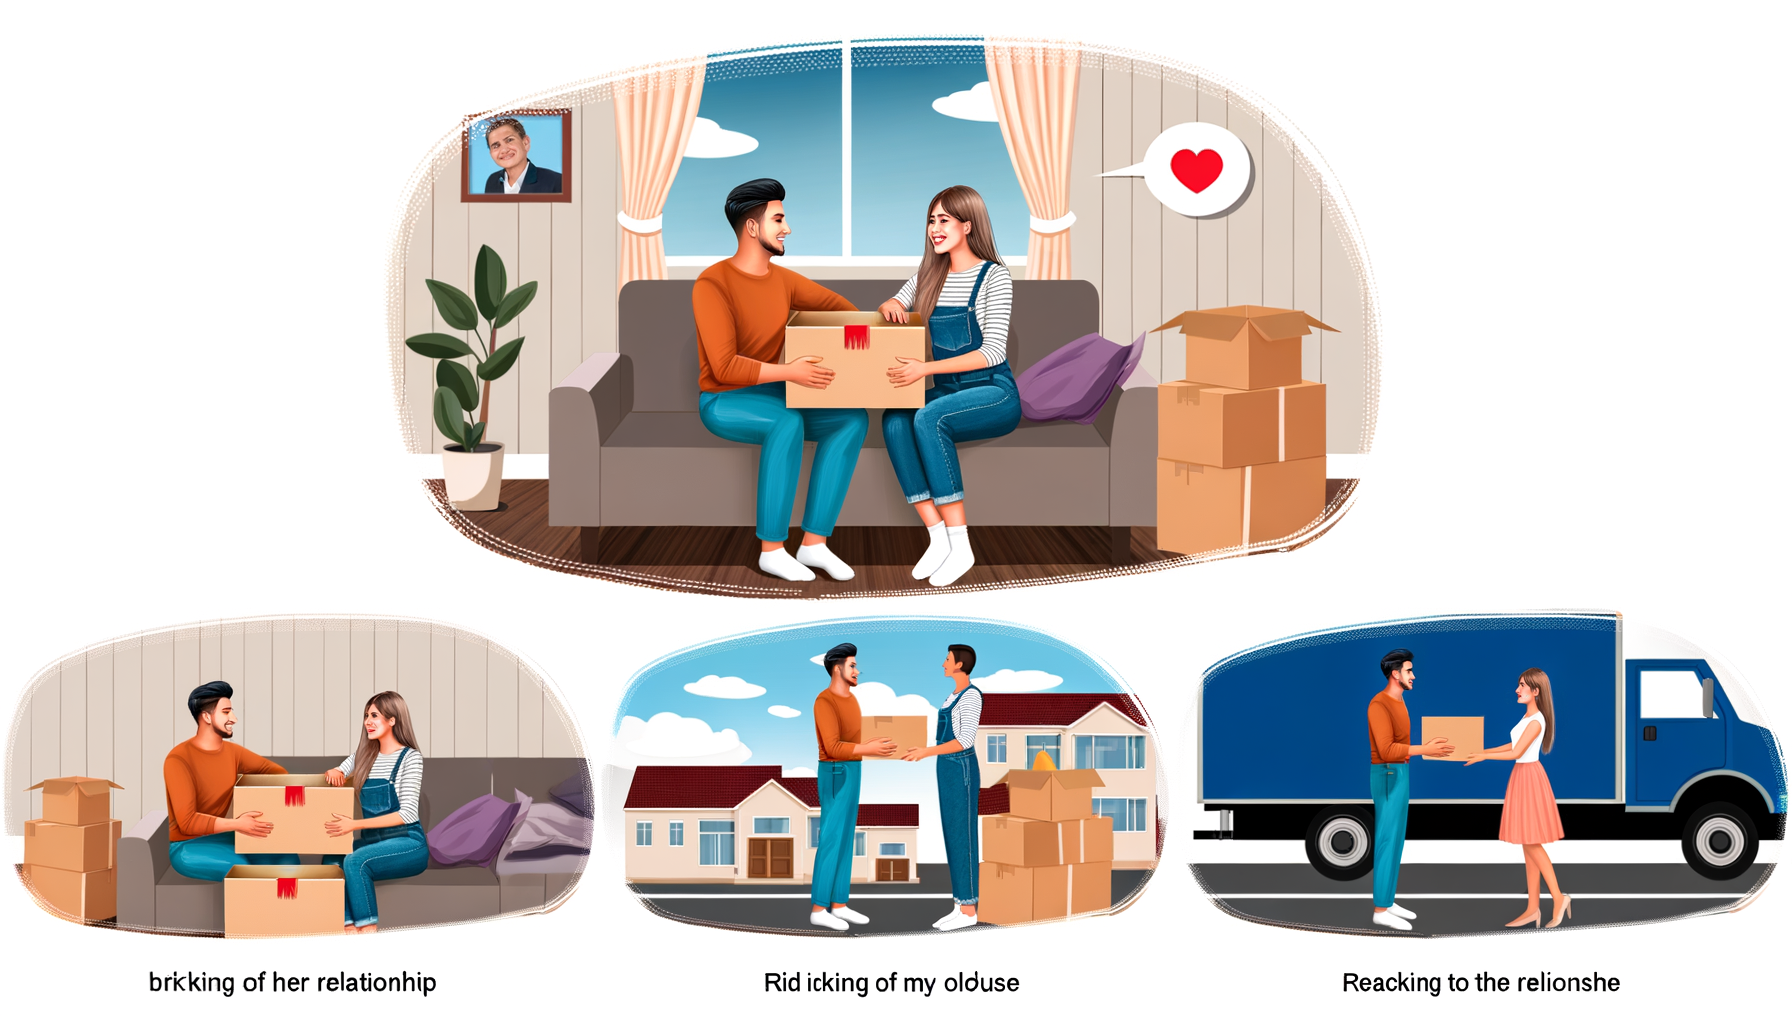 "Couple emballant des cartons pour déménager afin de suivre le travail du conjoint, illustrant une transition harmonieuse"